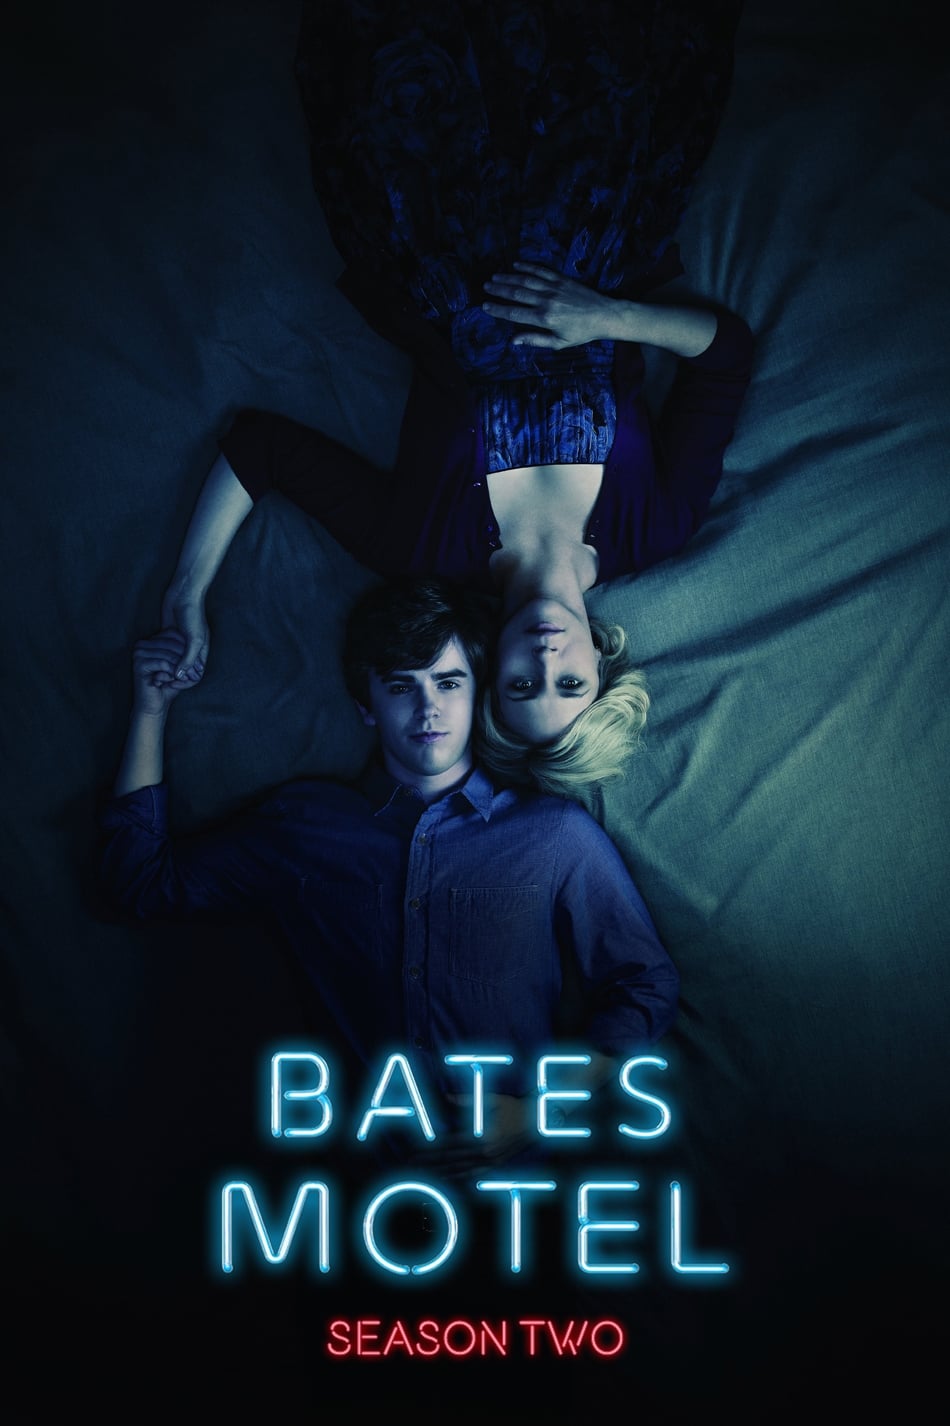 ดูหนังออนไลน์ Bates Motel (2014) Season 2 ซับไทย EP 7 เบส โมเทล ปี2 ตอนที่7 (ซับไทย)